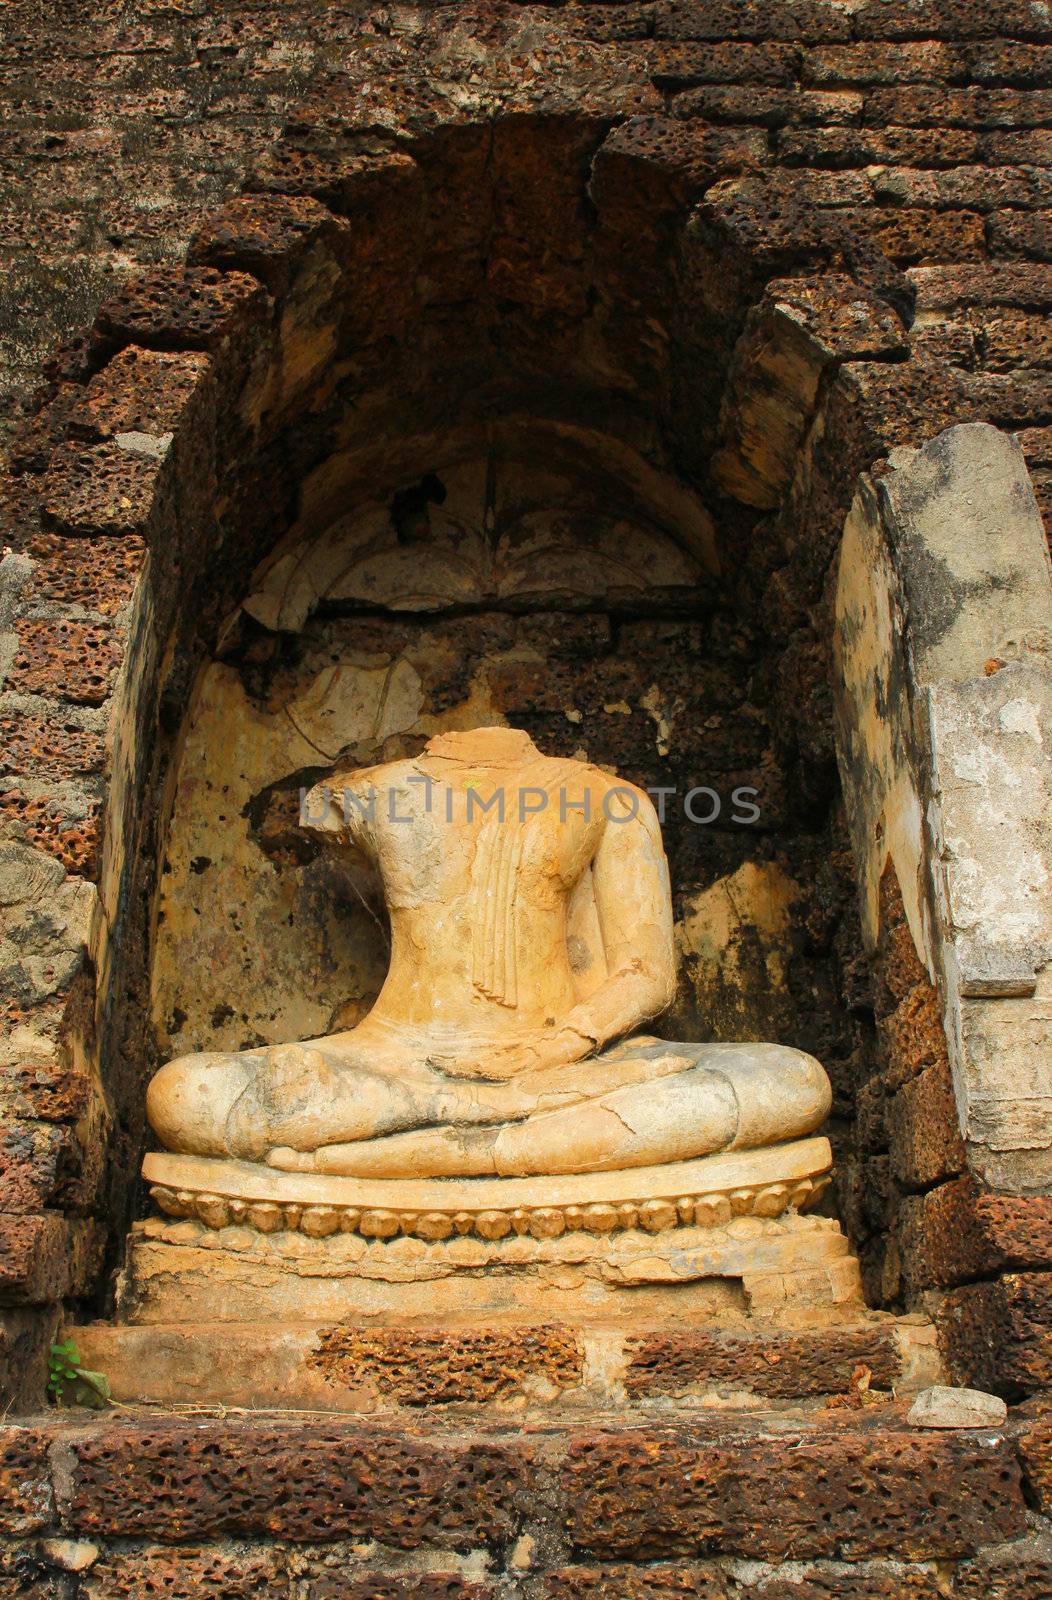 Sculpture of ruin buddha in Sukhothai, Thailand  by nuchylee